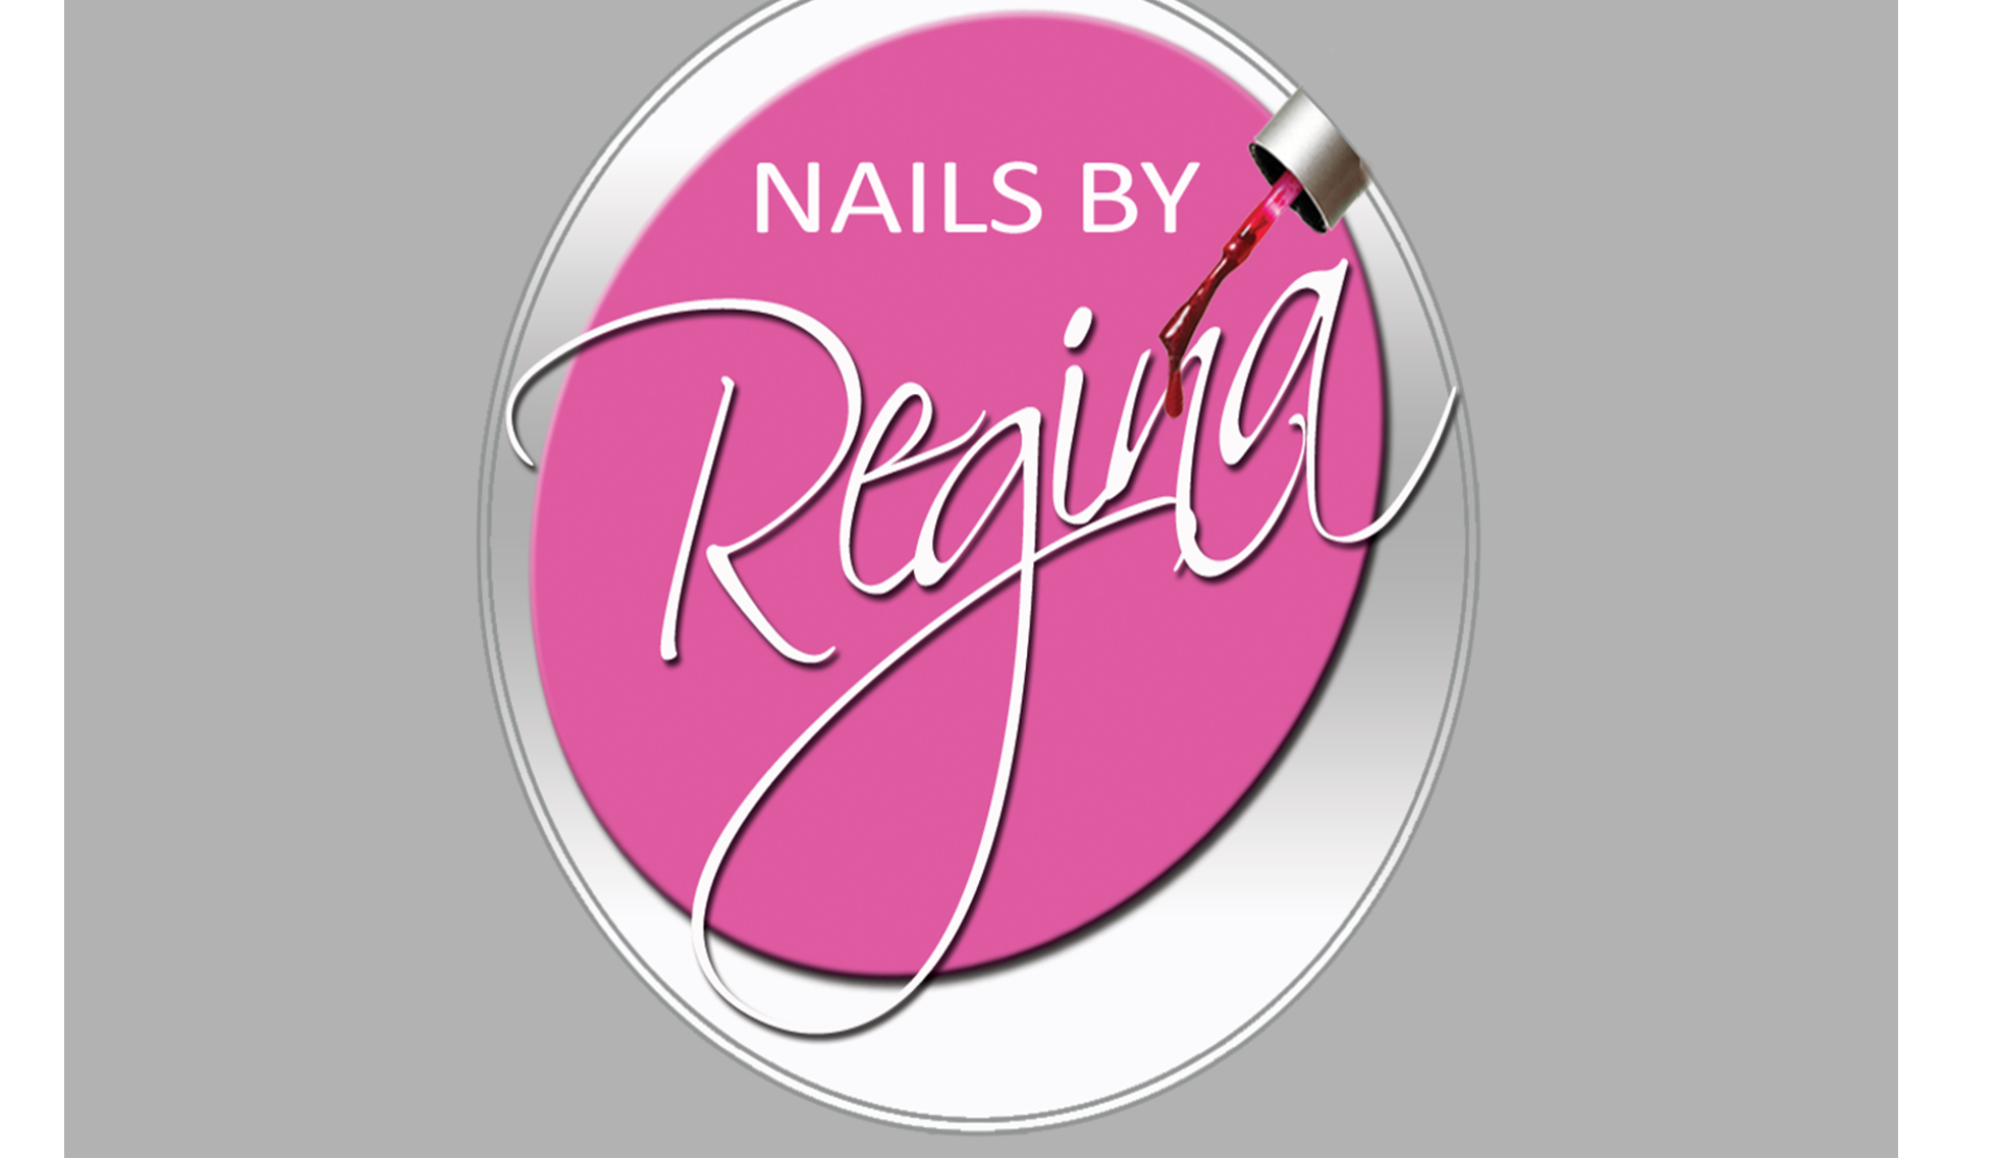 Nails by Regina Nail Salon@Salon Suites of Sarasota Florida